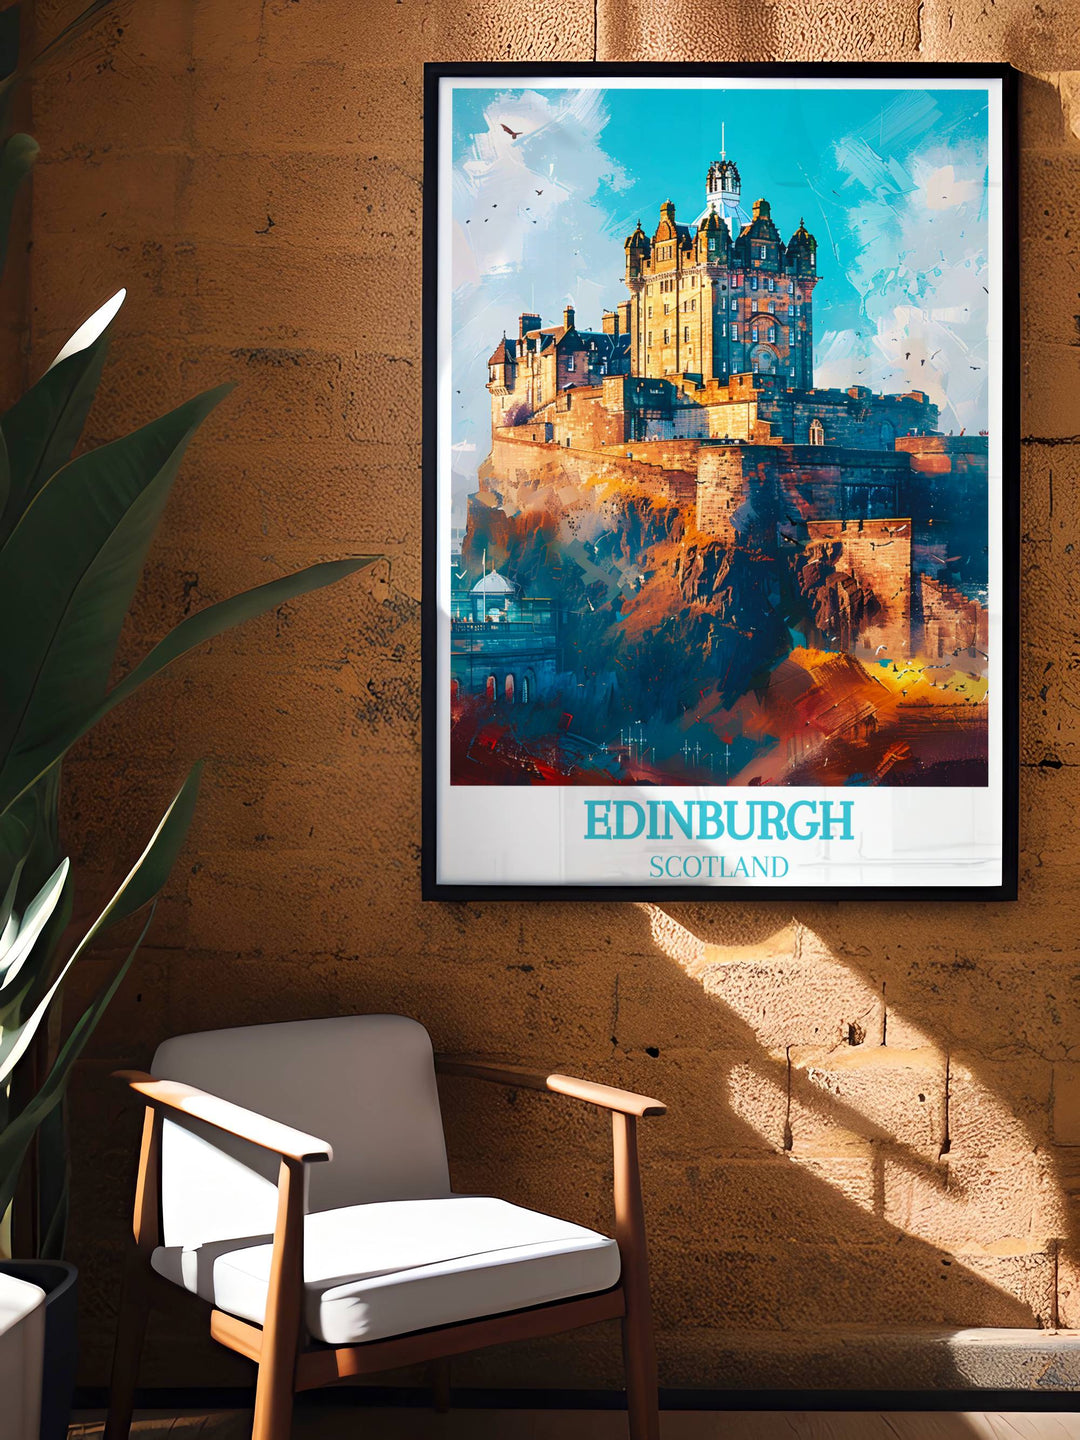 Bezaubernder Kunstdruck von Edinburgh Castle – ein majestätisches schottisches Geschenk für jeden Raum